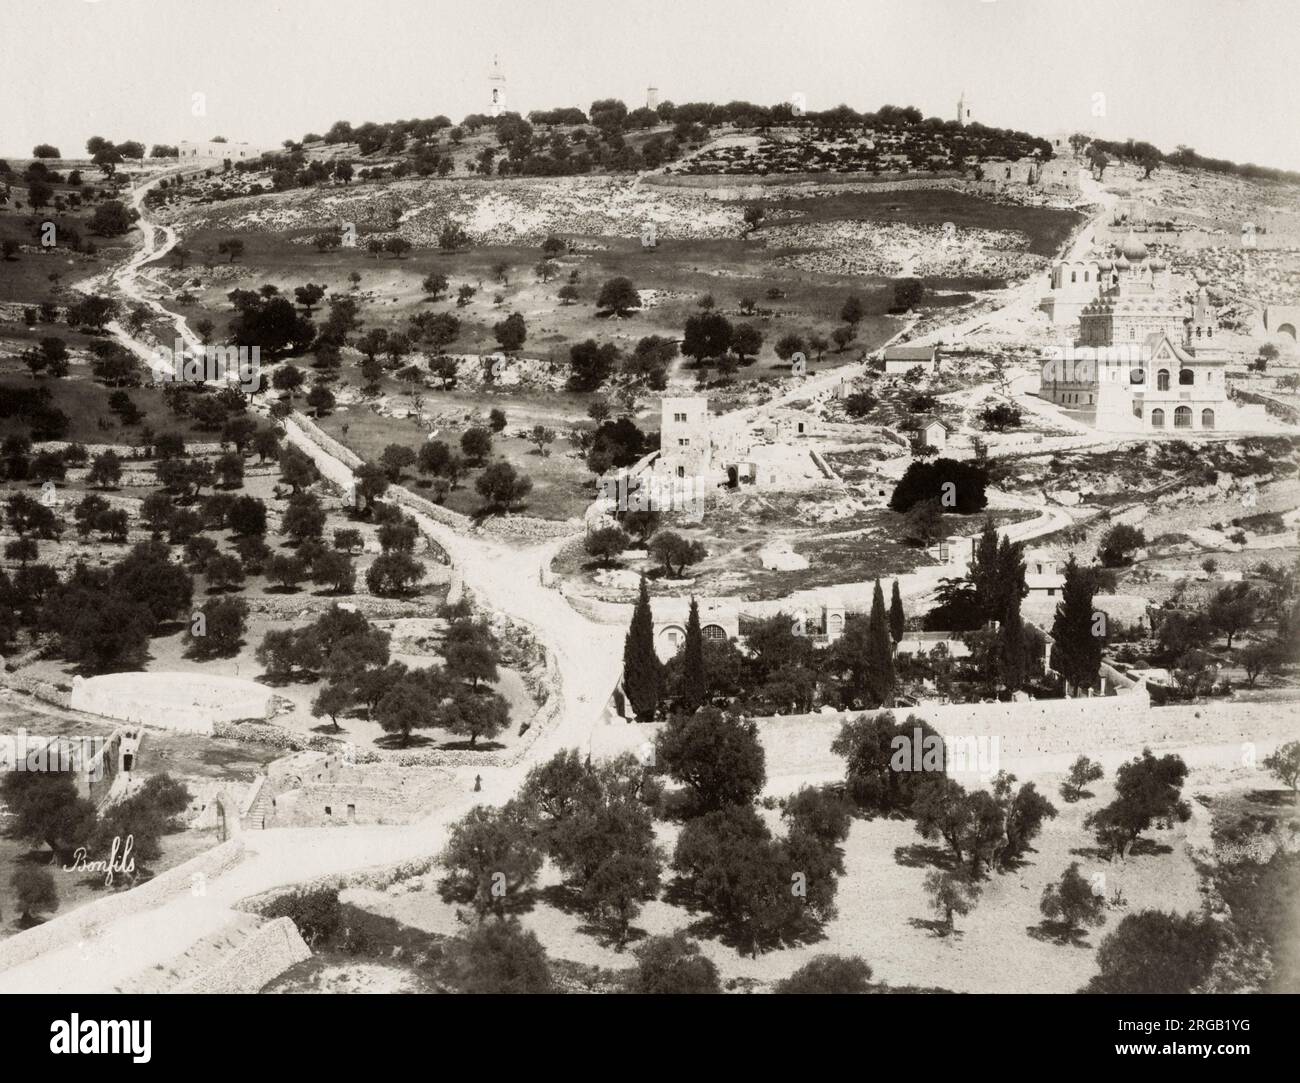 2800 Mount Of Olives Stock Photos Pictures  RoyaltyFree Images   iStock  Jerusalem Israel Garden of gethsemane